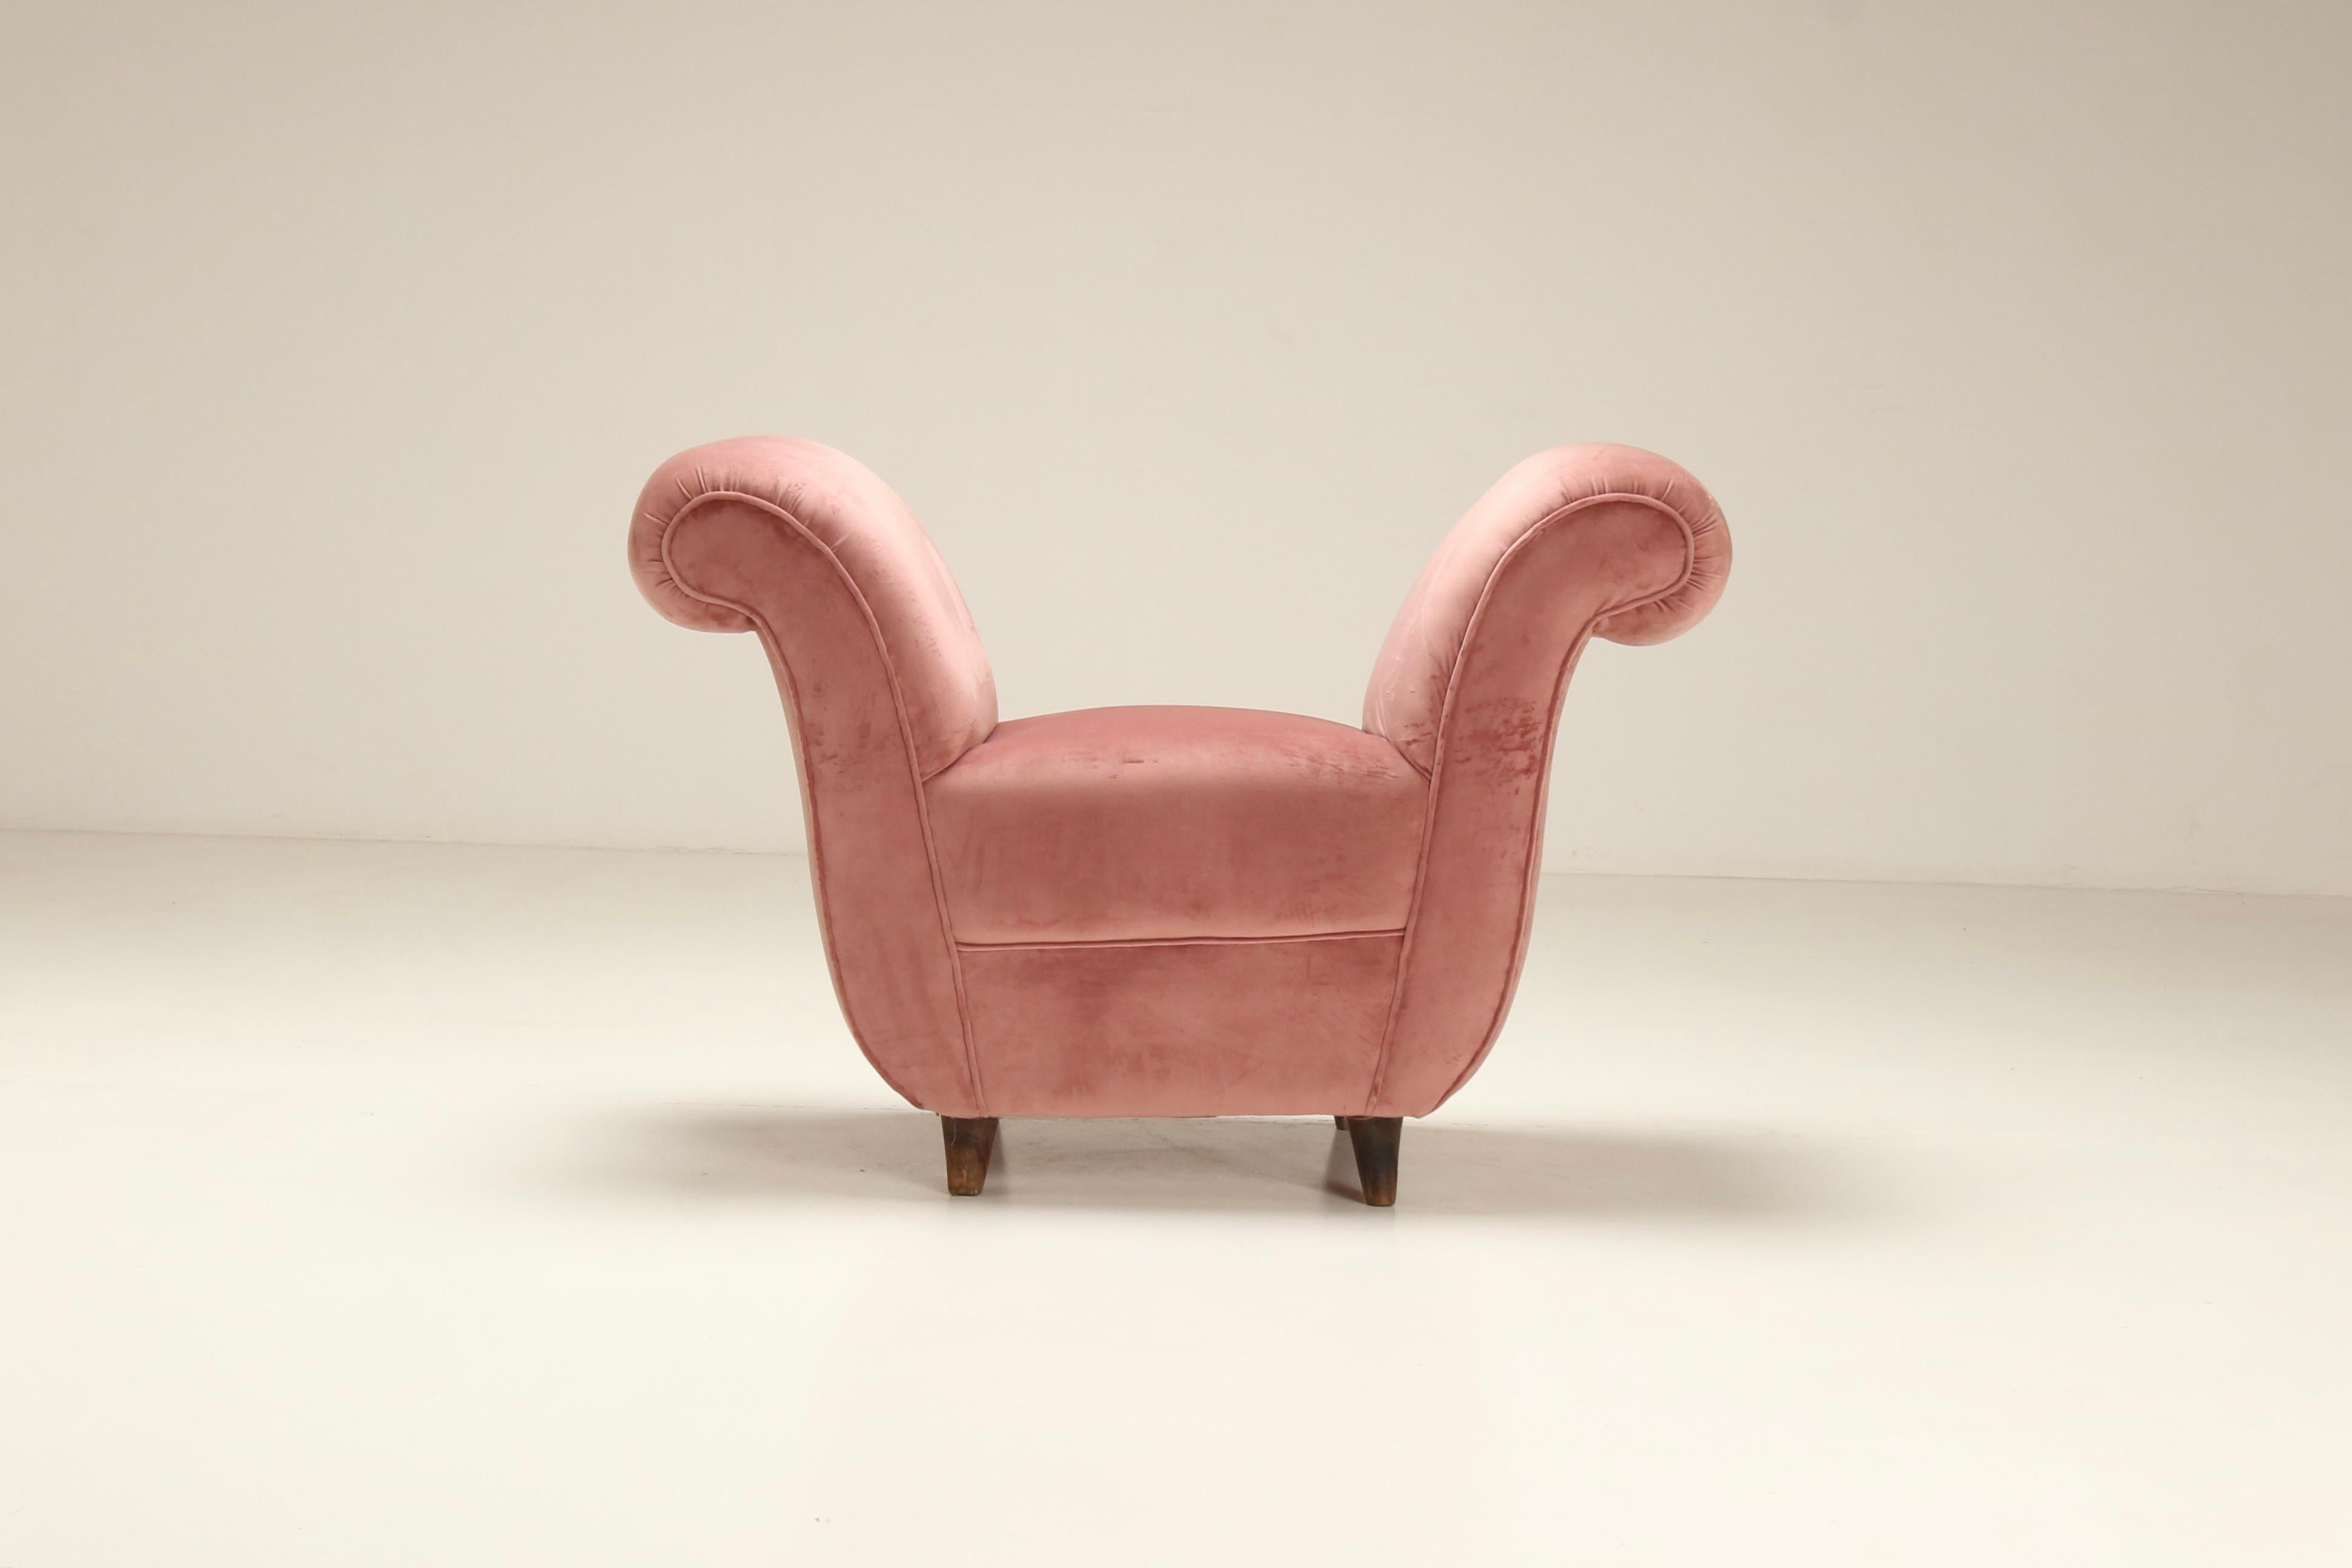 Dieser rosafarbene Pouf aus den 1940er Jahren versprüht Vintage-Charme und Raffinesse. Mit seinem plüschigen Samtbezug und dem sanften Rosaton wird er zu einem reizvollen Akzentmöbel, das Komfort und Stil vereint und einen Raum belebt. Sein